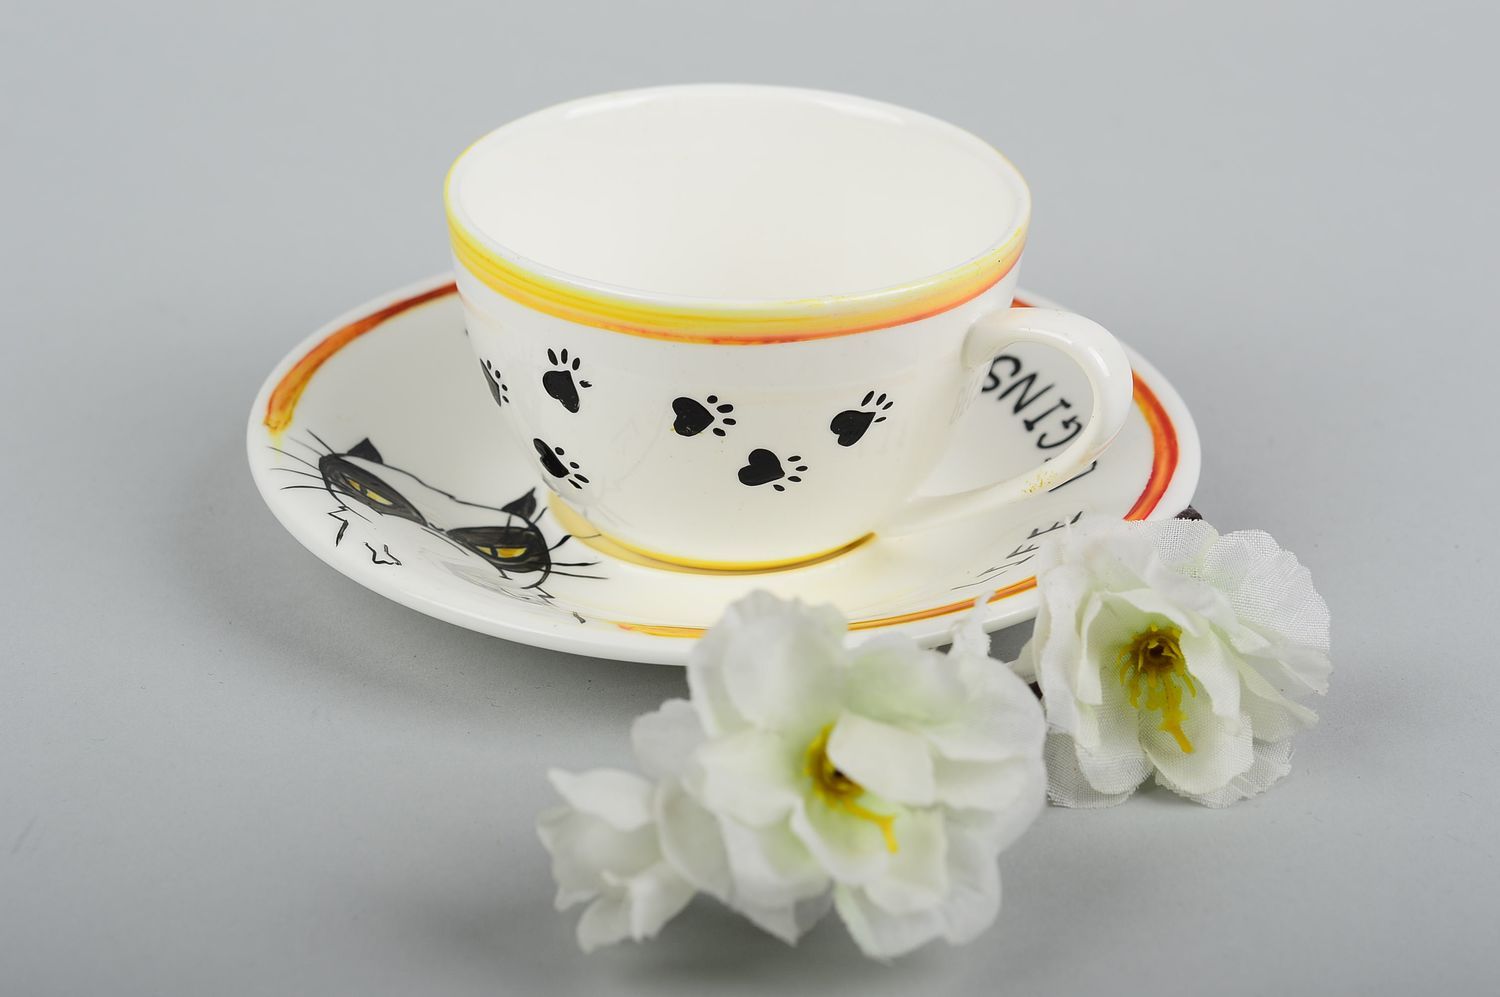 Tasse mit Untertasse Keramik Tasse handmade Tee Tasse bemalt Tee Geschirr schön foto 1